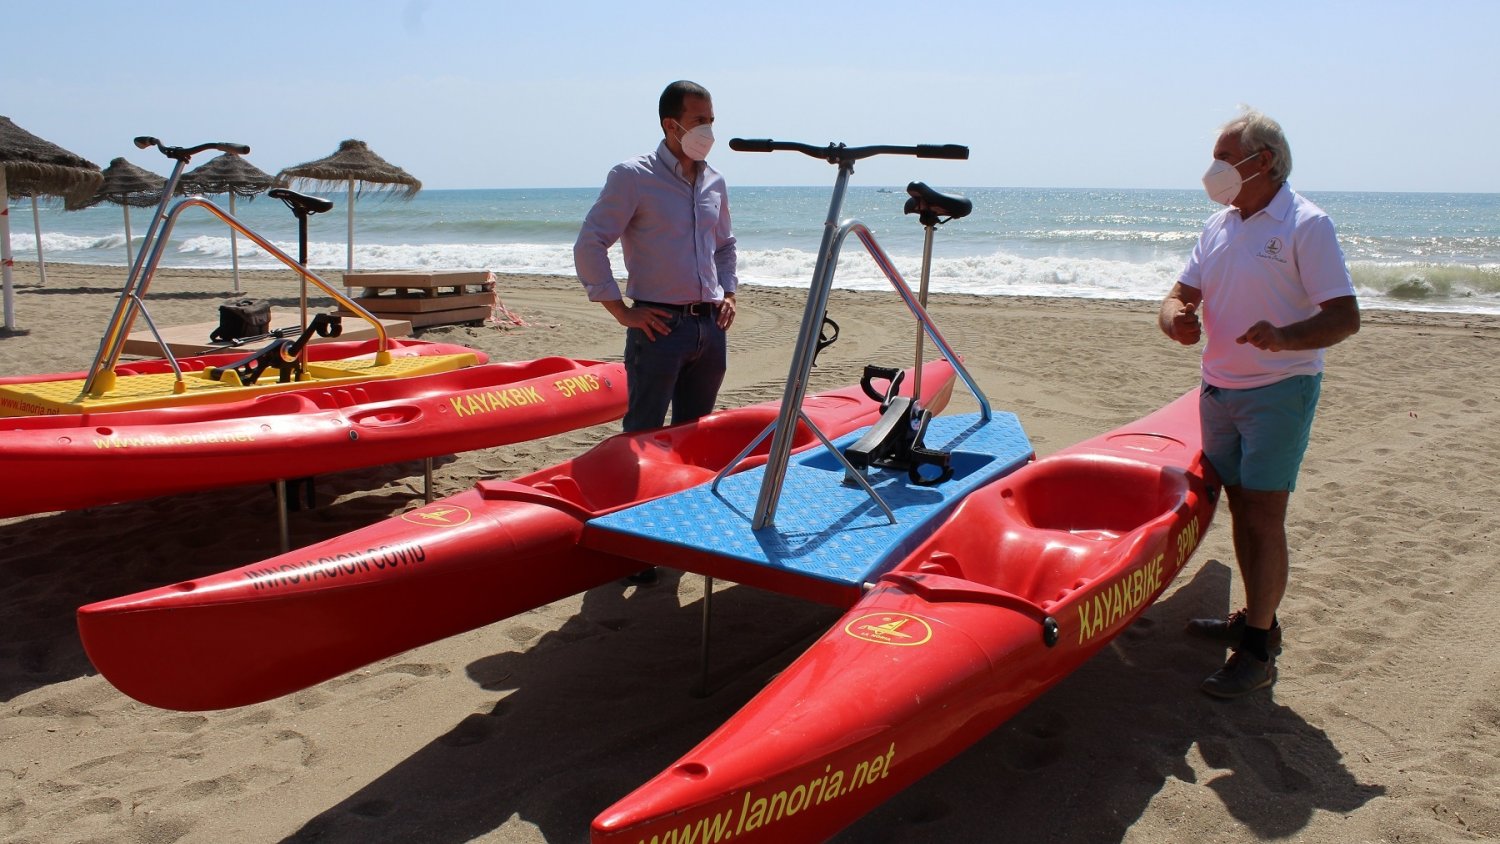 Fuengirola contará este verano con hidropedales individuales en sus playas para mayor seguridad